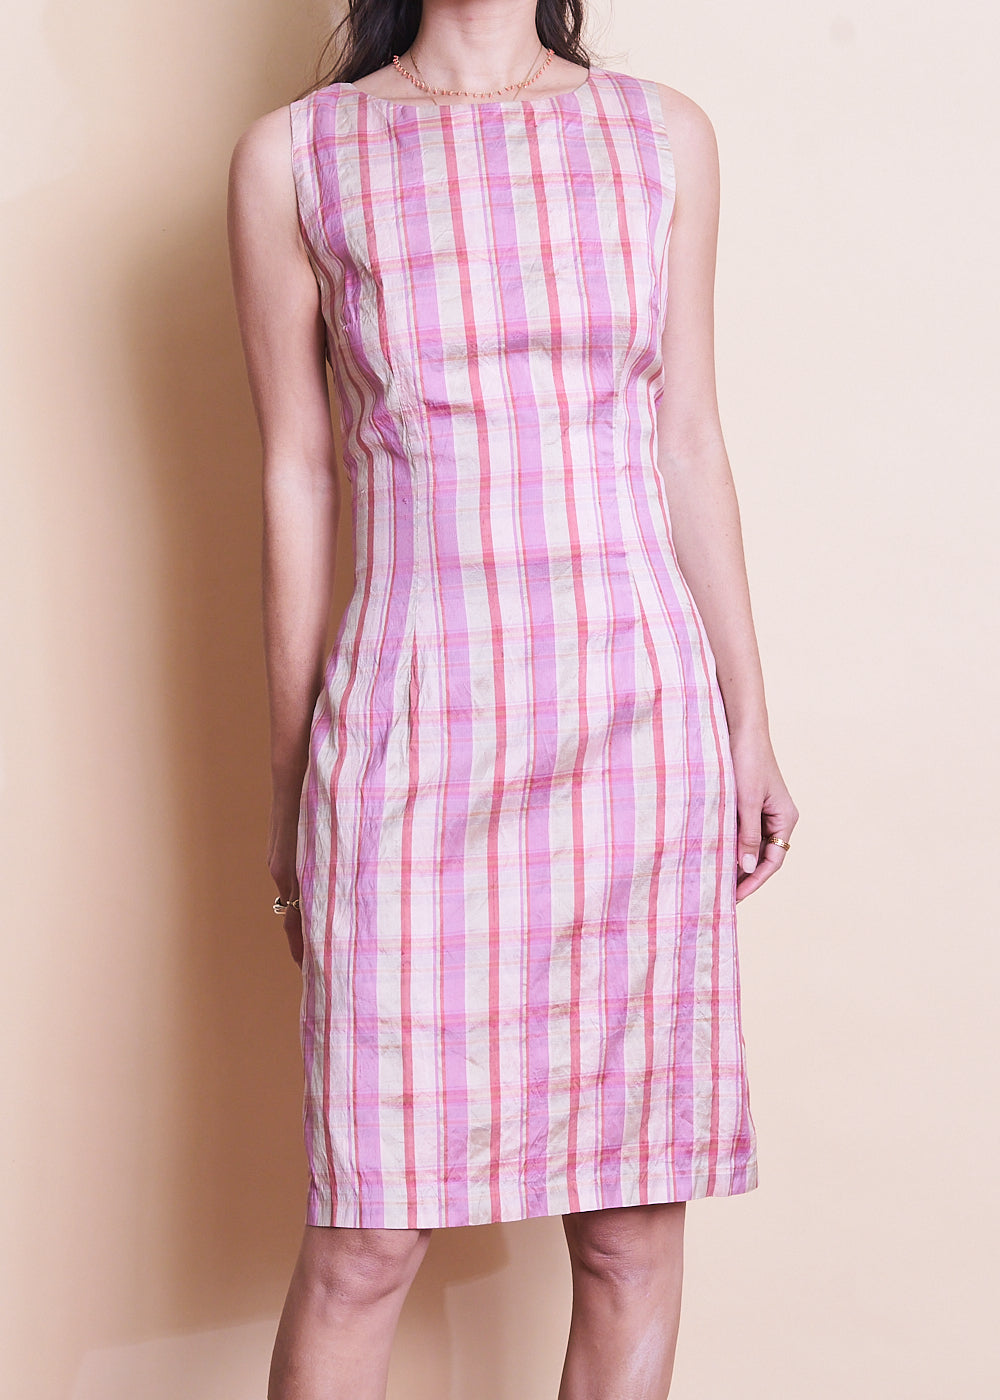 Raw Silk Pink Plaid Dress, Sz Small